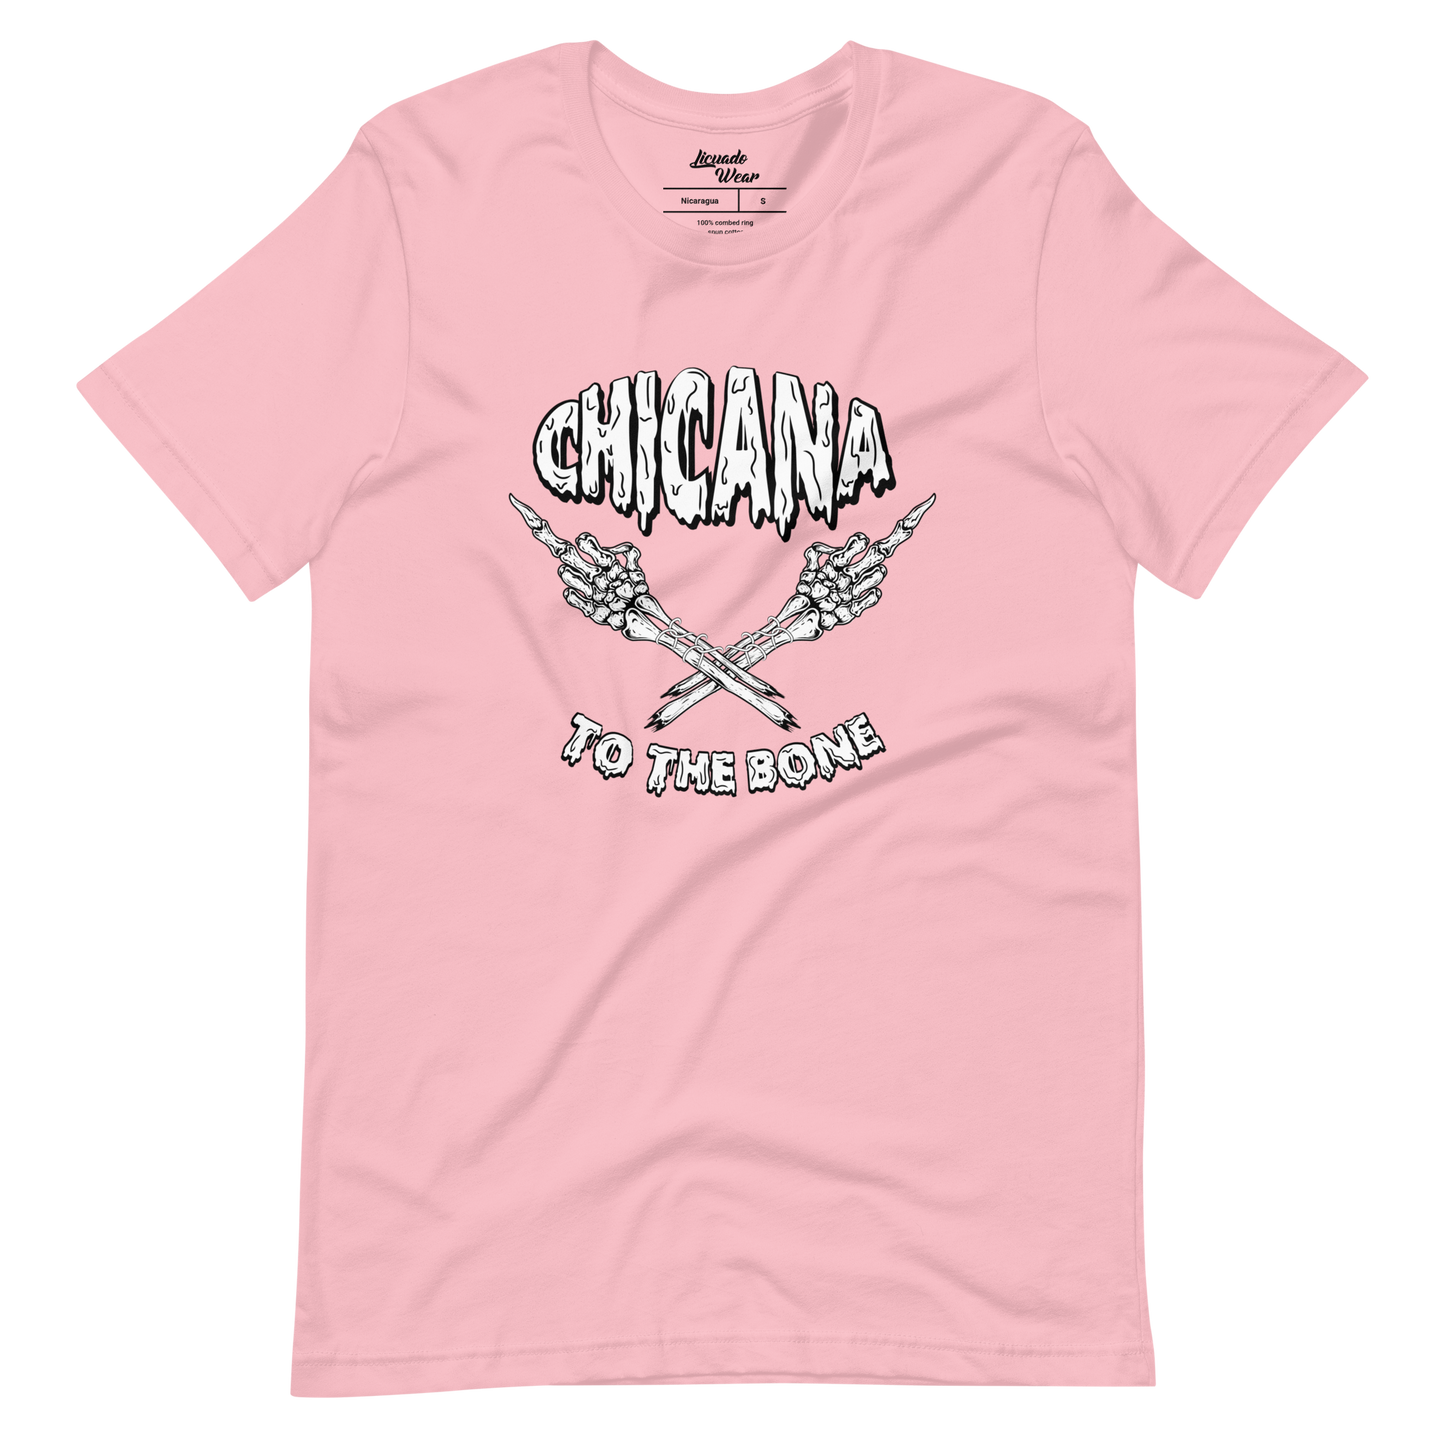 Chicana to the Bone - Unisex t-shirt